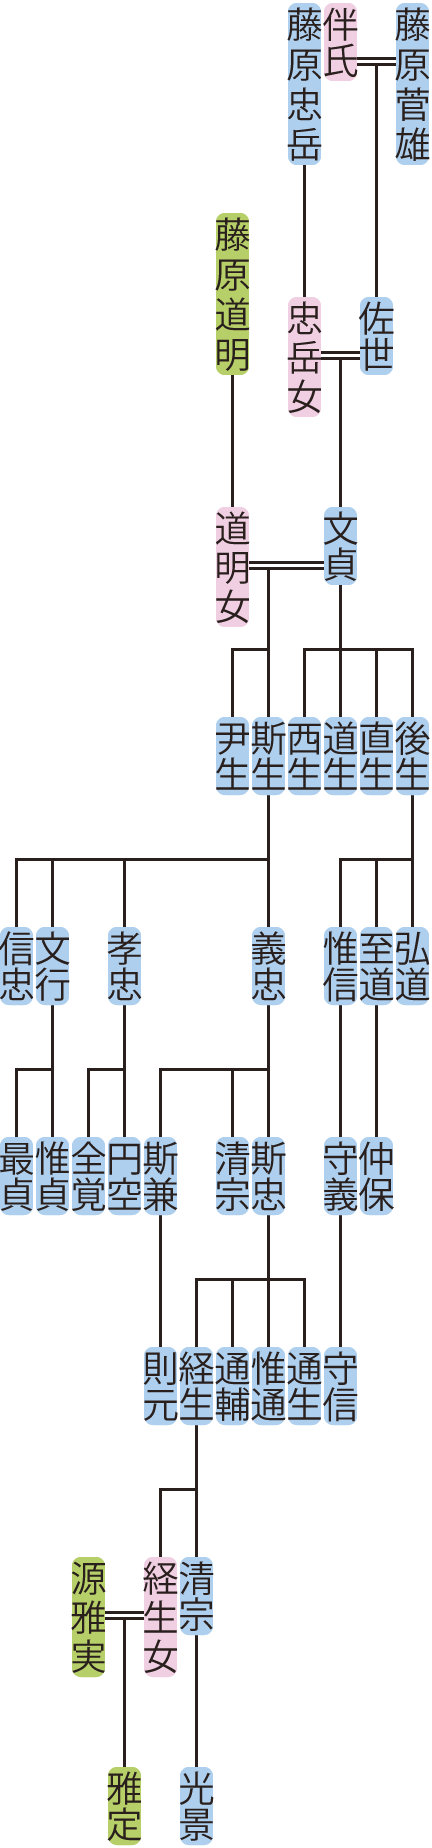 藤原文貞の系図